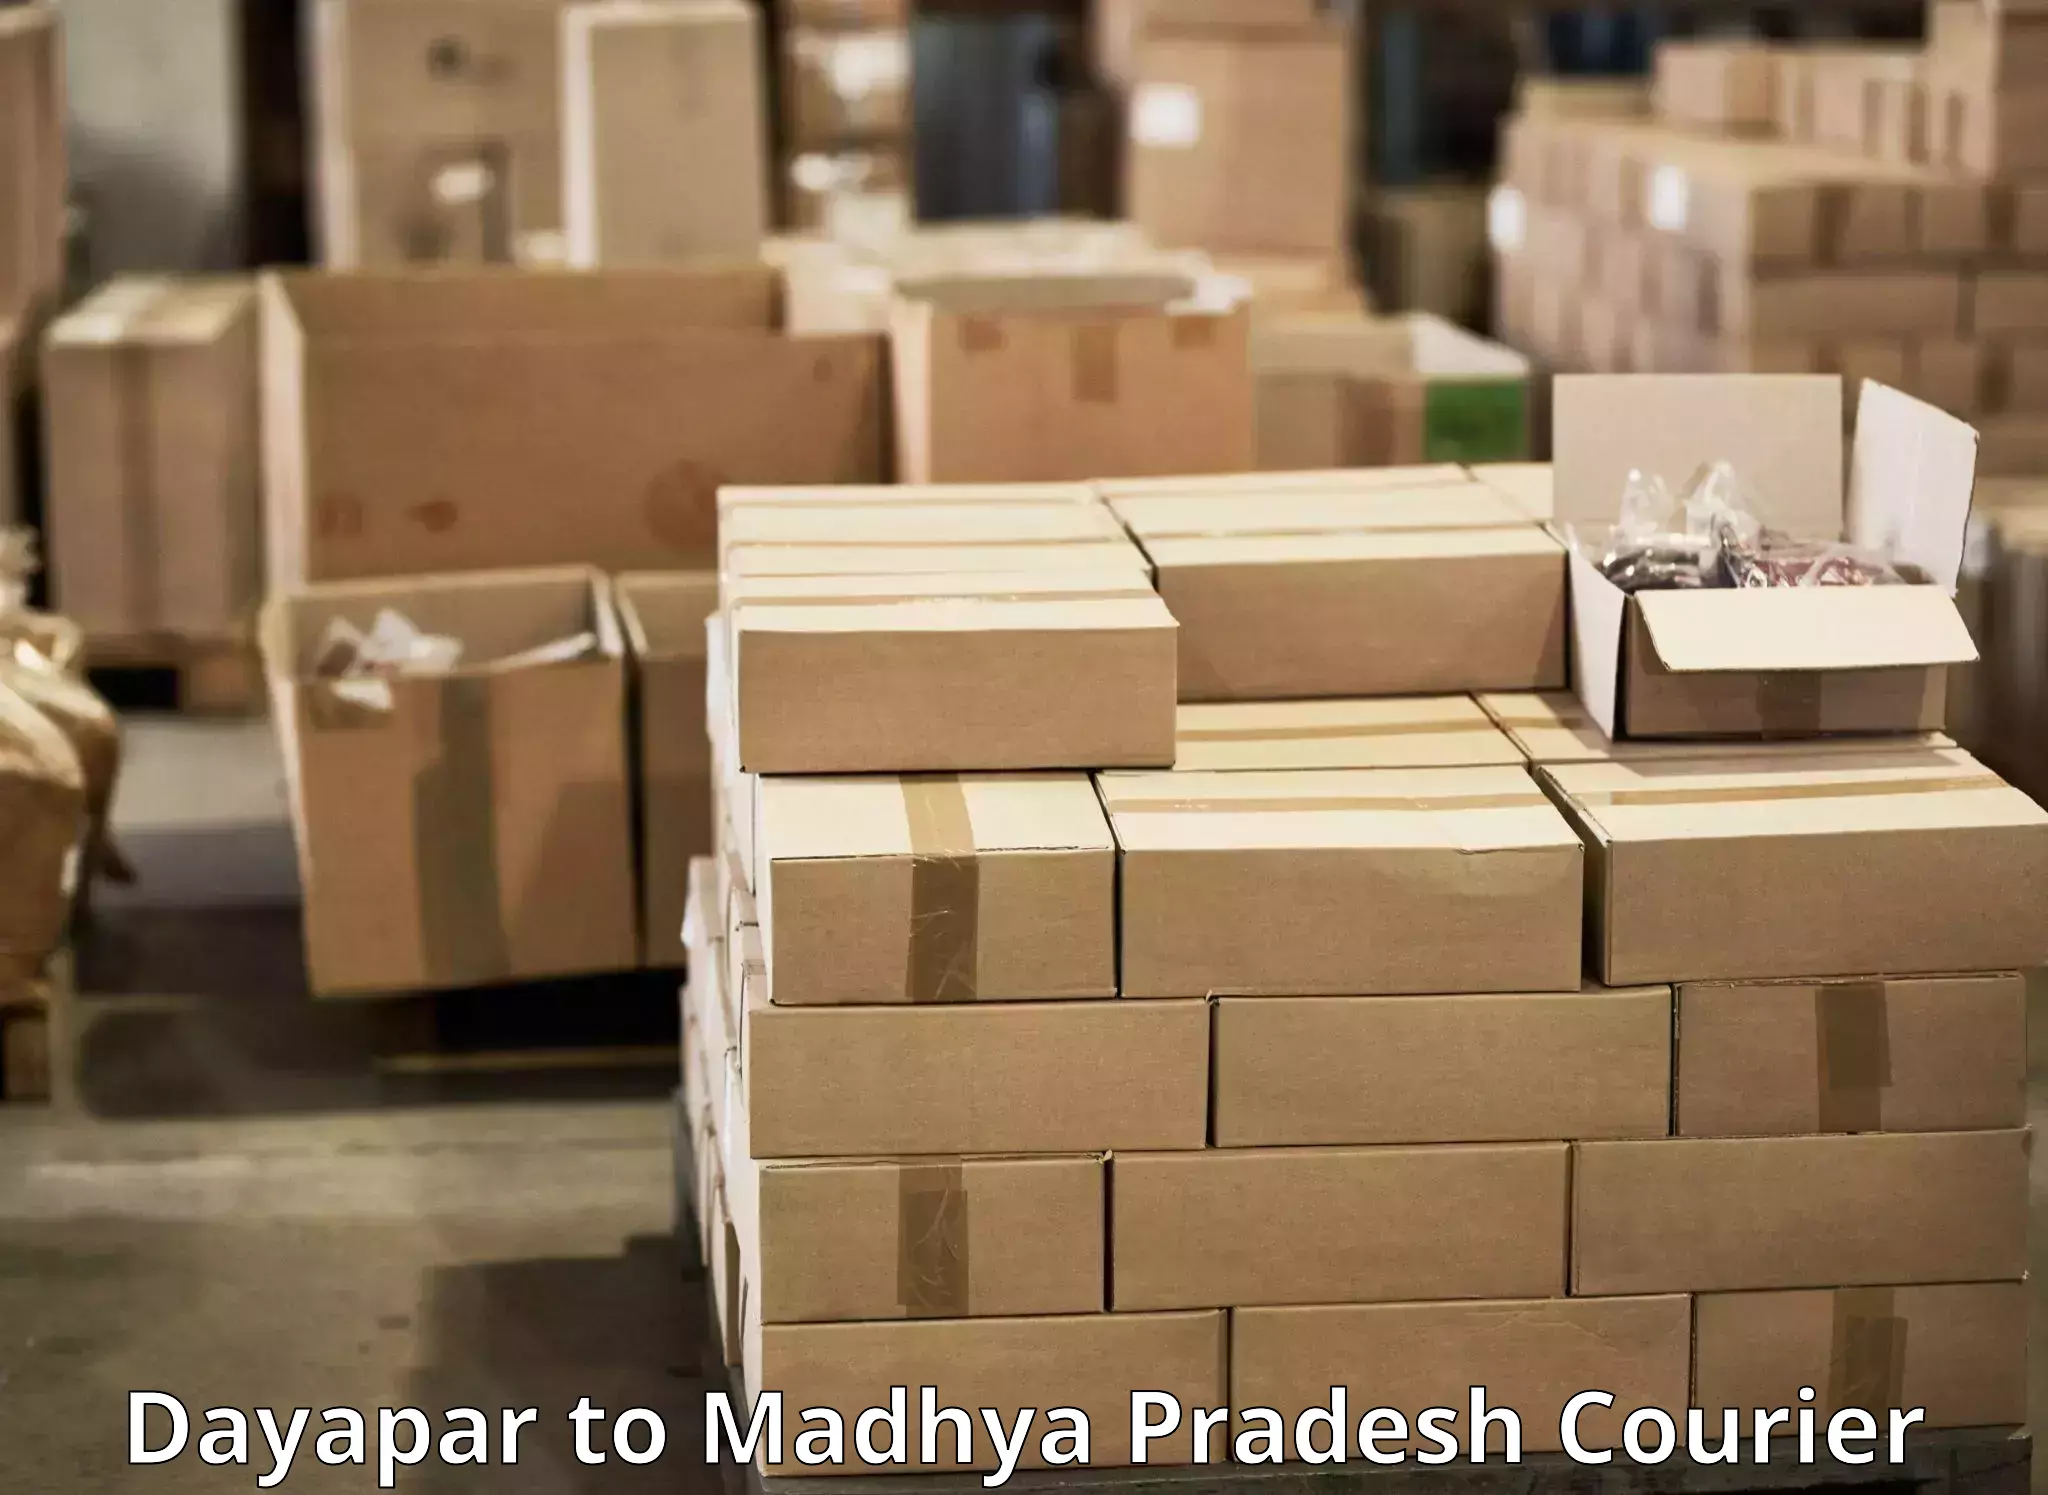 Modern courier technology Dayapar to Rampur Naikin